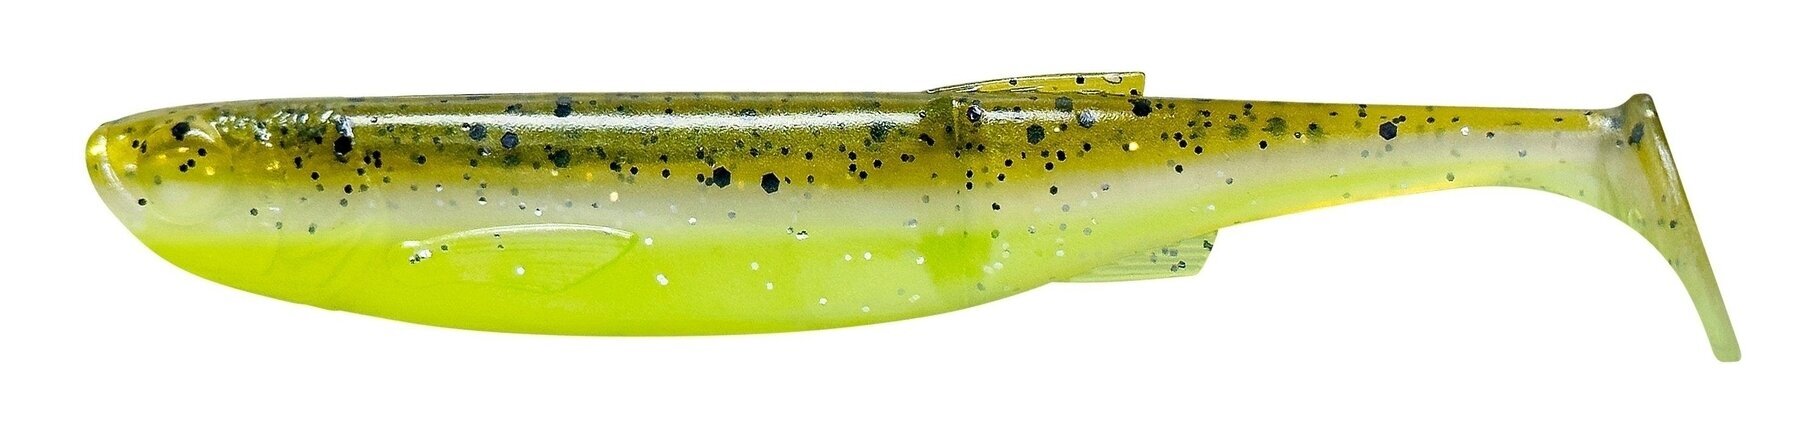 Τεχνητό Δολώμα από Καουτσούκ Savage Gear Craft Bleak Clam 5 pcs Green Pearl Yellow 8,5 cm 4,2 g